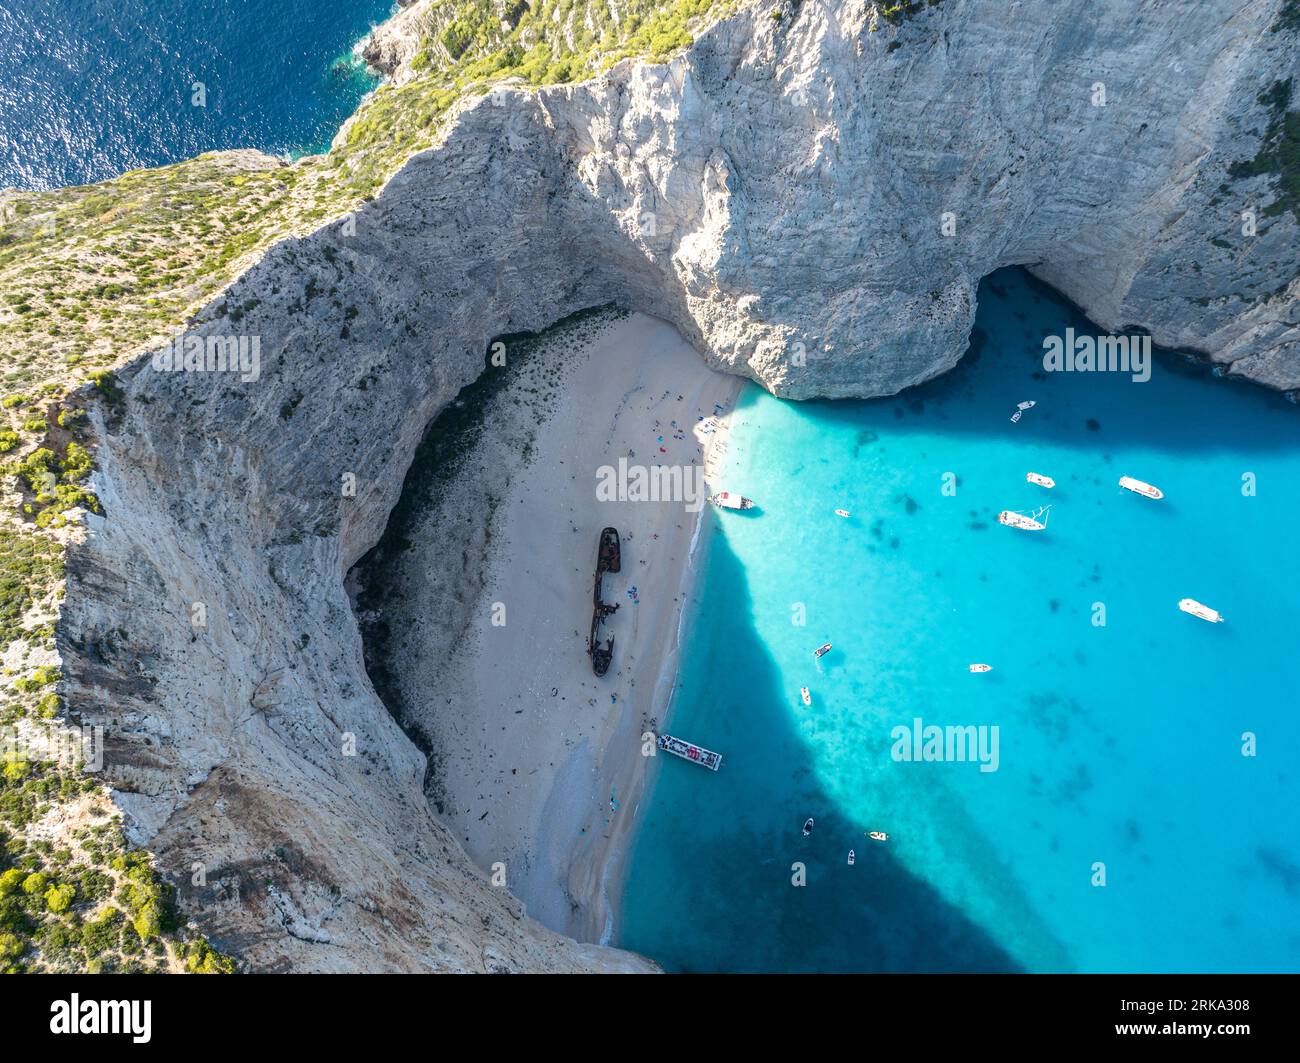 Plage de Navagio (Anafonitria), baie du Naufrage, île de Zante (Zakynthos), Péloponnèse, Grèce Stockfoto